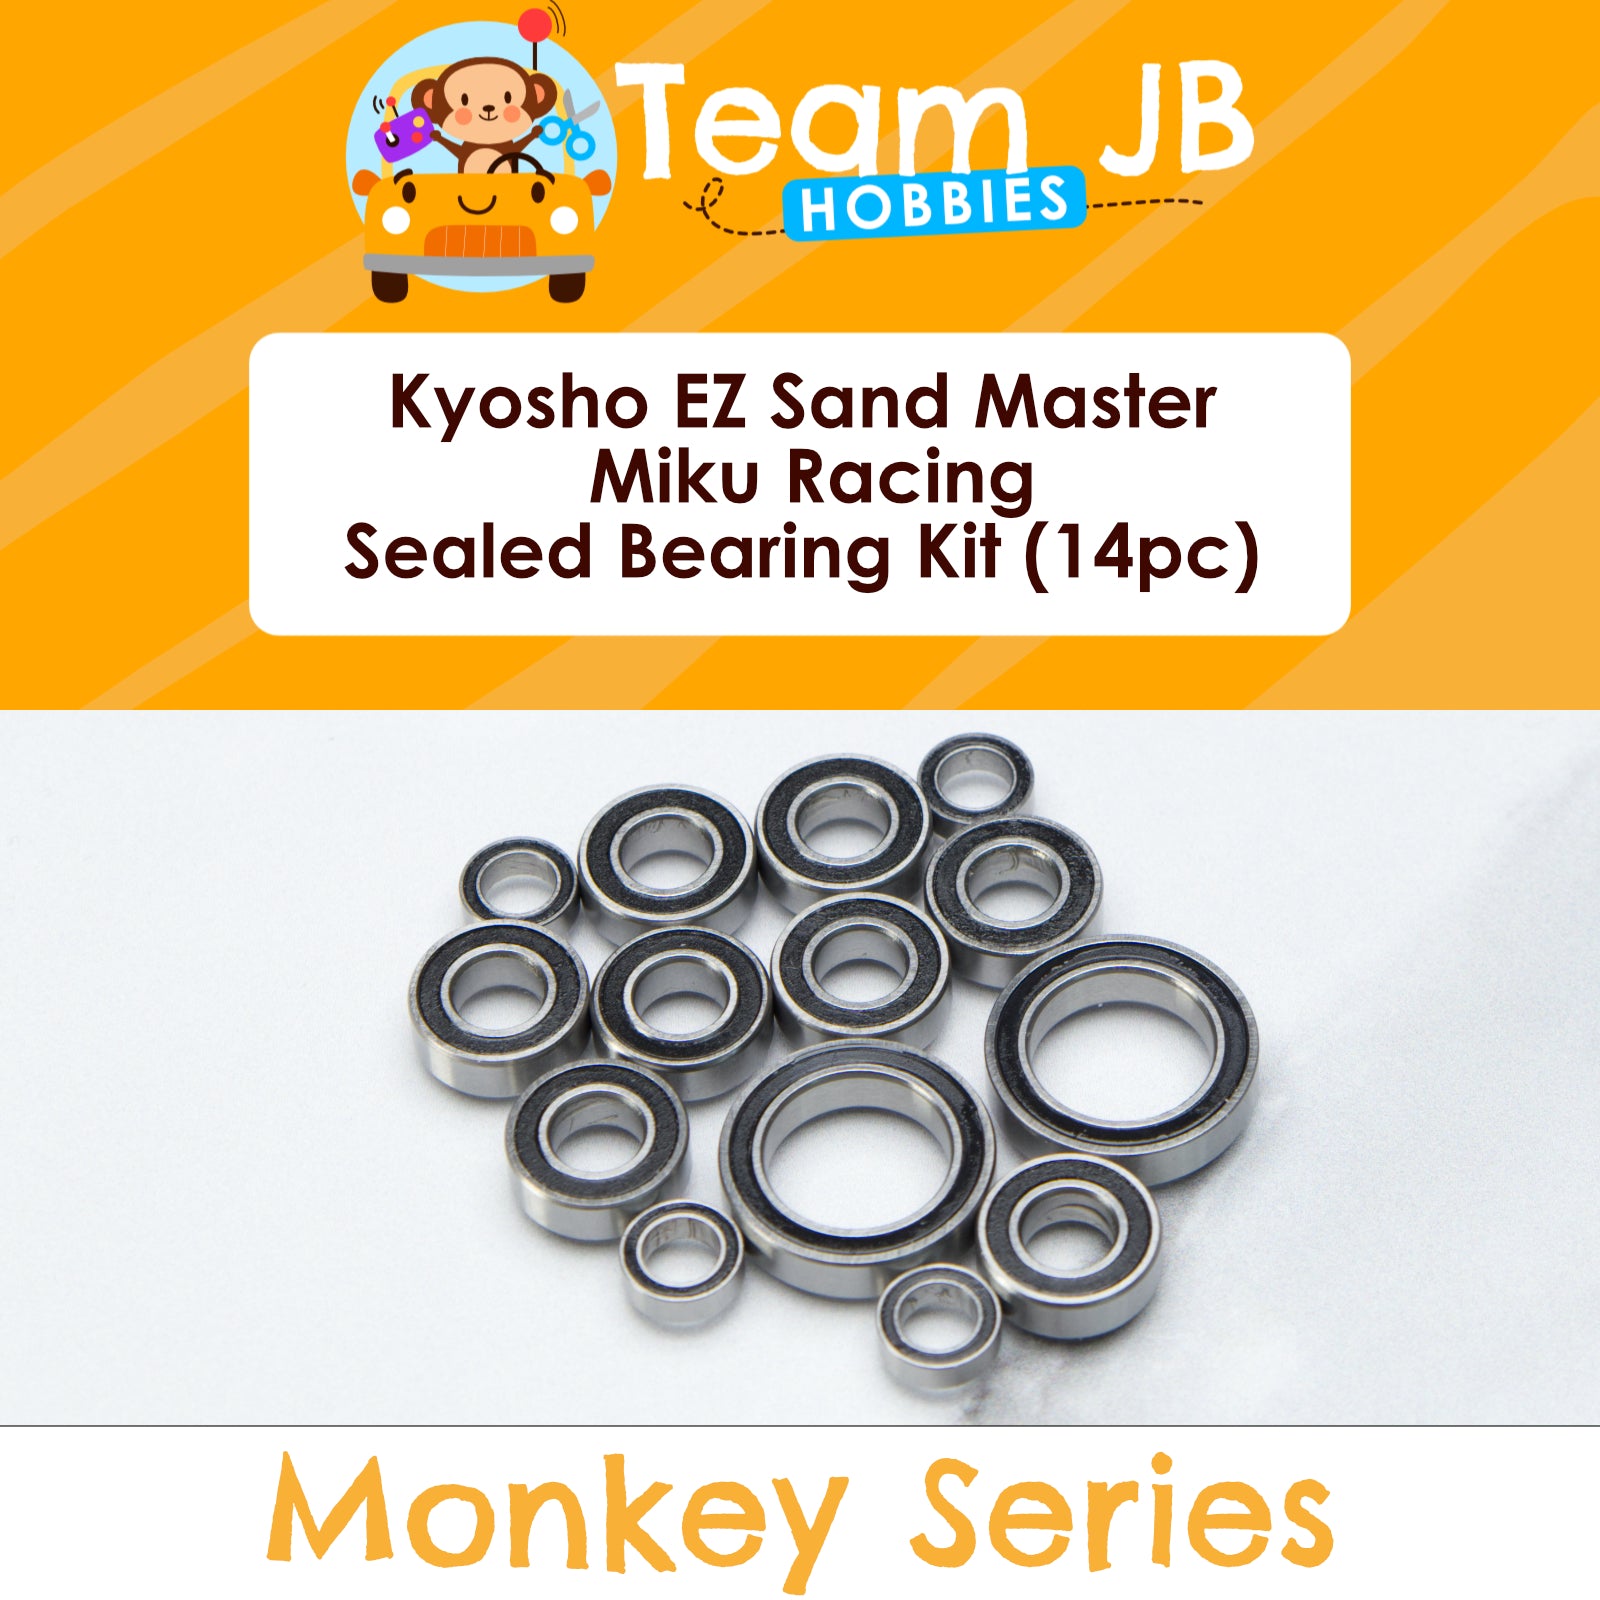 Kyosho EZ Sand Master Miku Racing - Sealed Bearing Kit